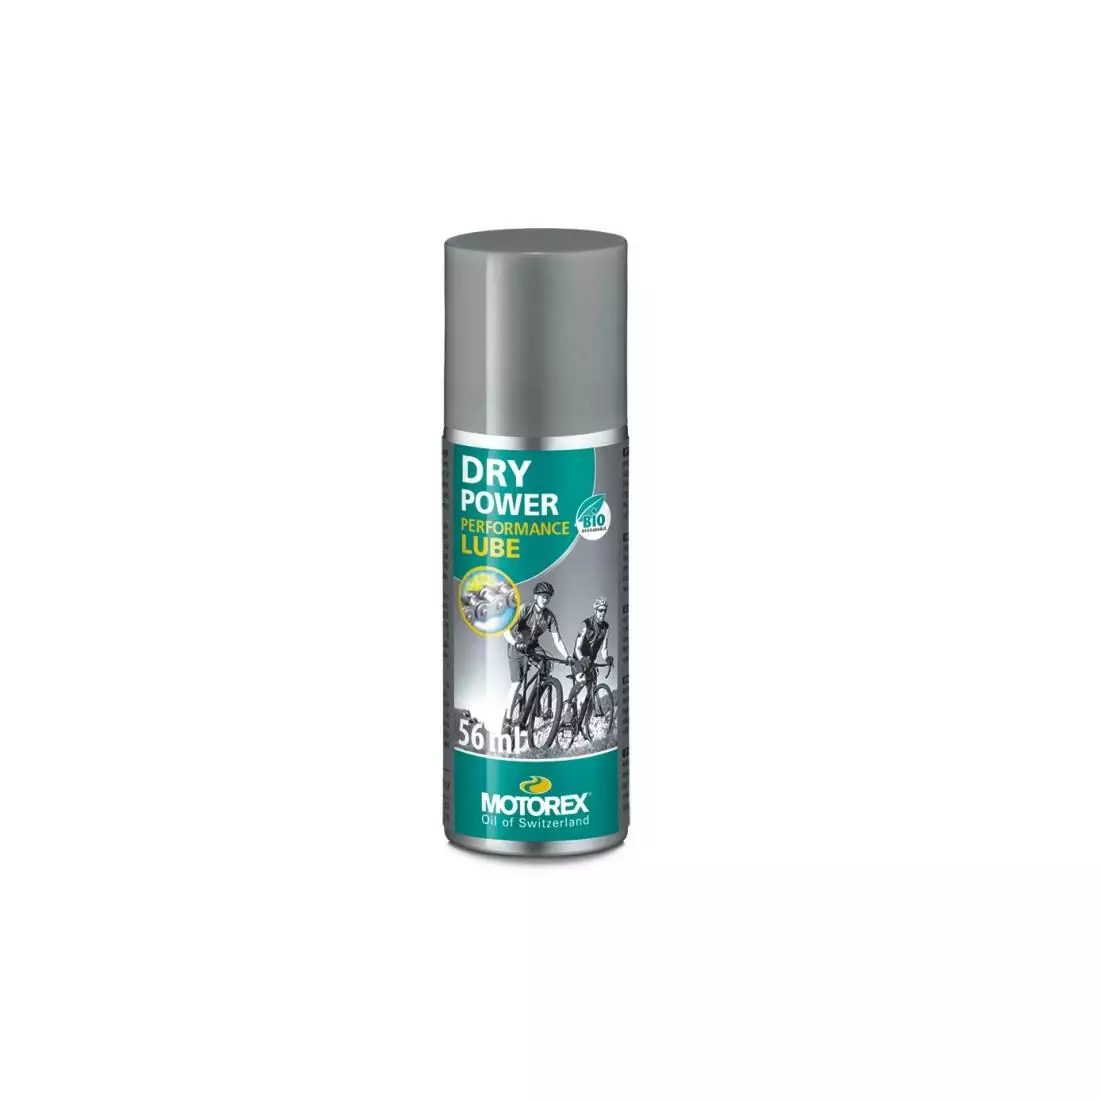 MOTOREX DRY POWER lubrifiant pentru lanț condiții uscate, spray 56 ml